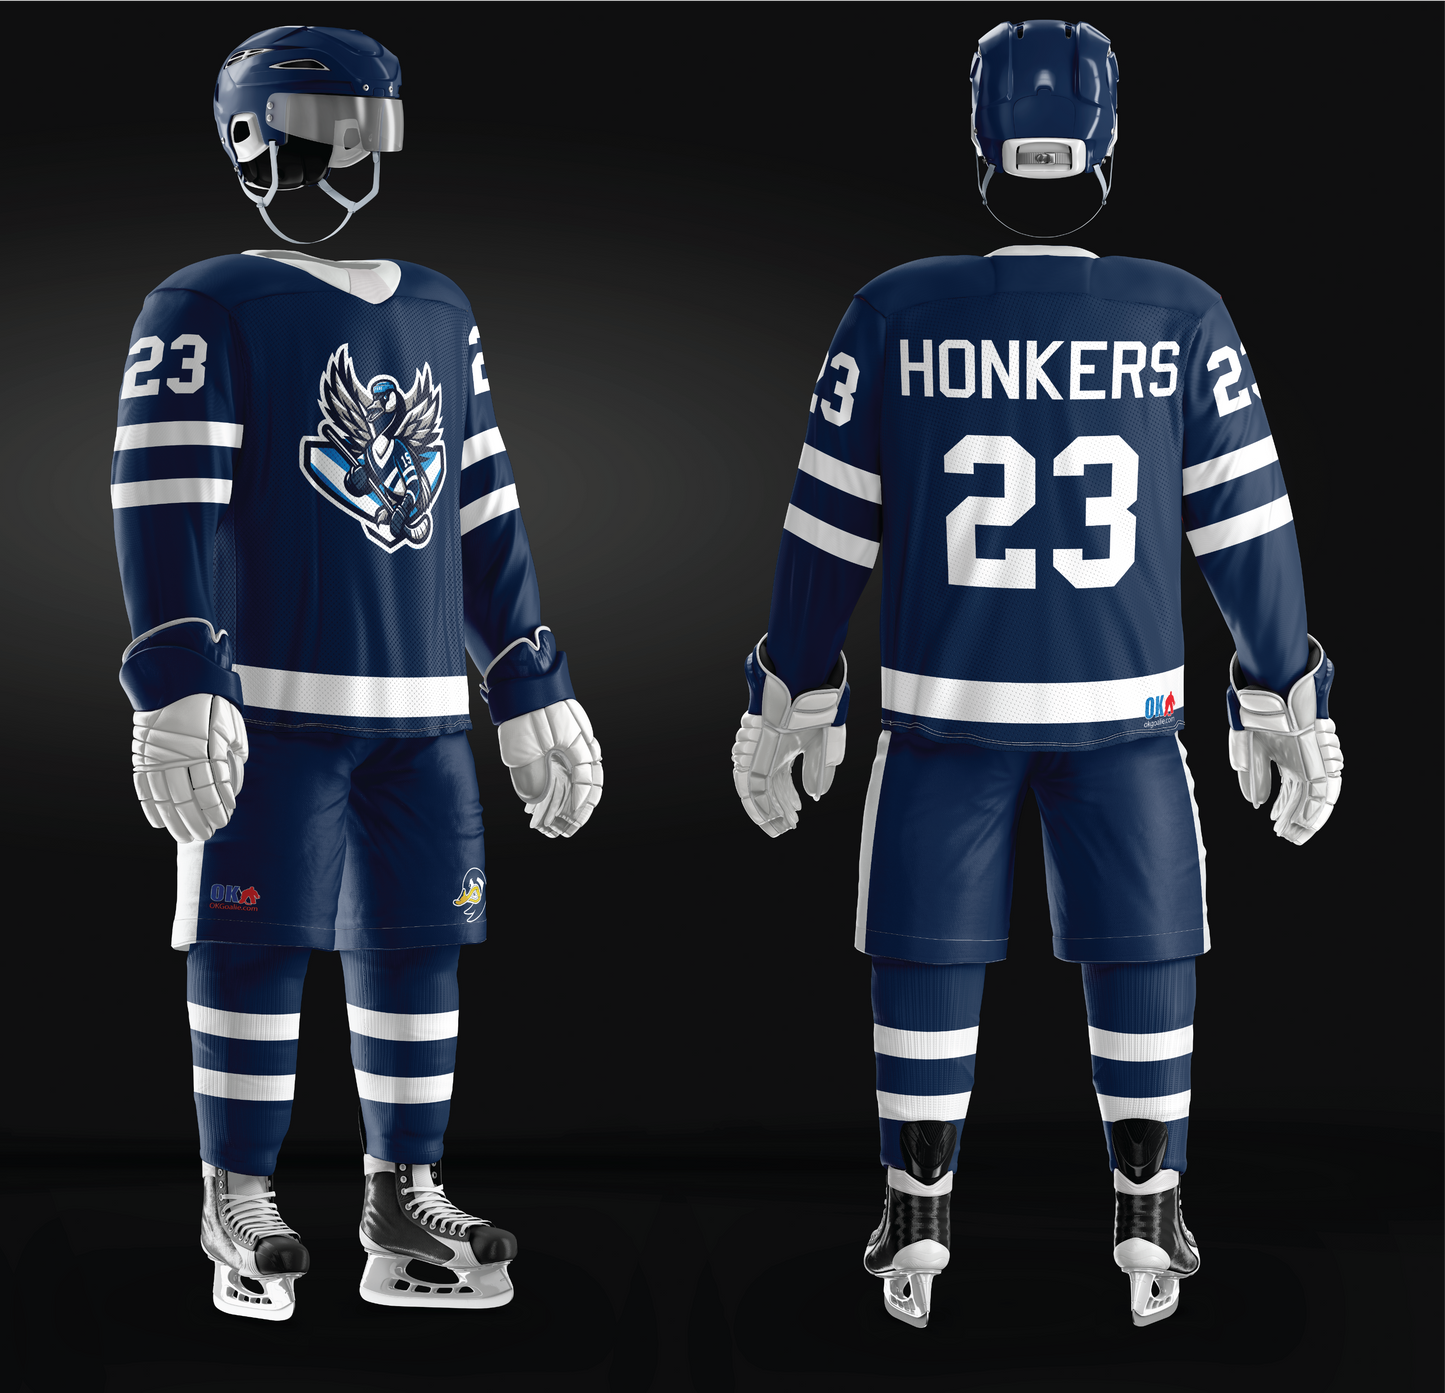 Honkers Ice Hockey Jersey